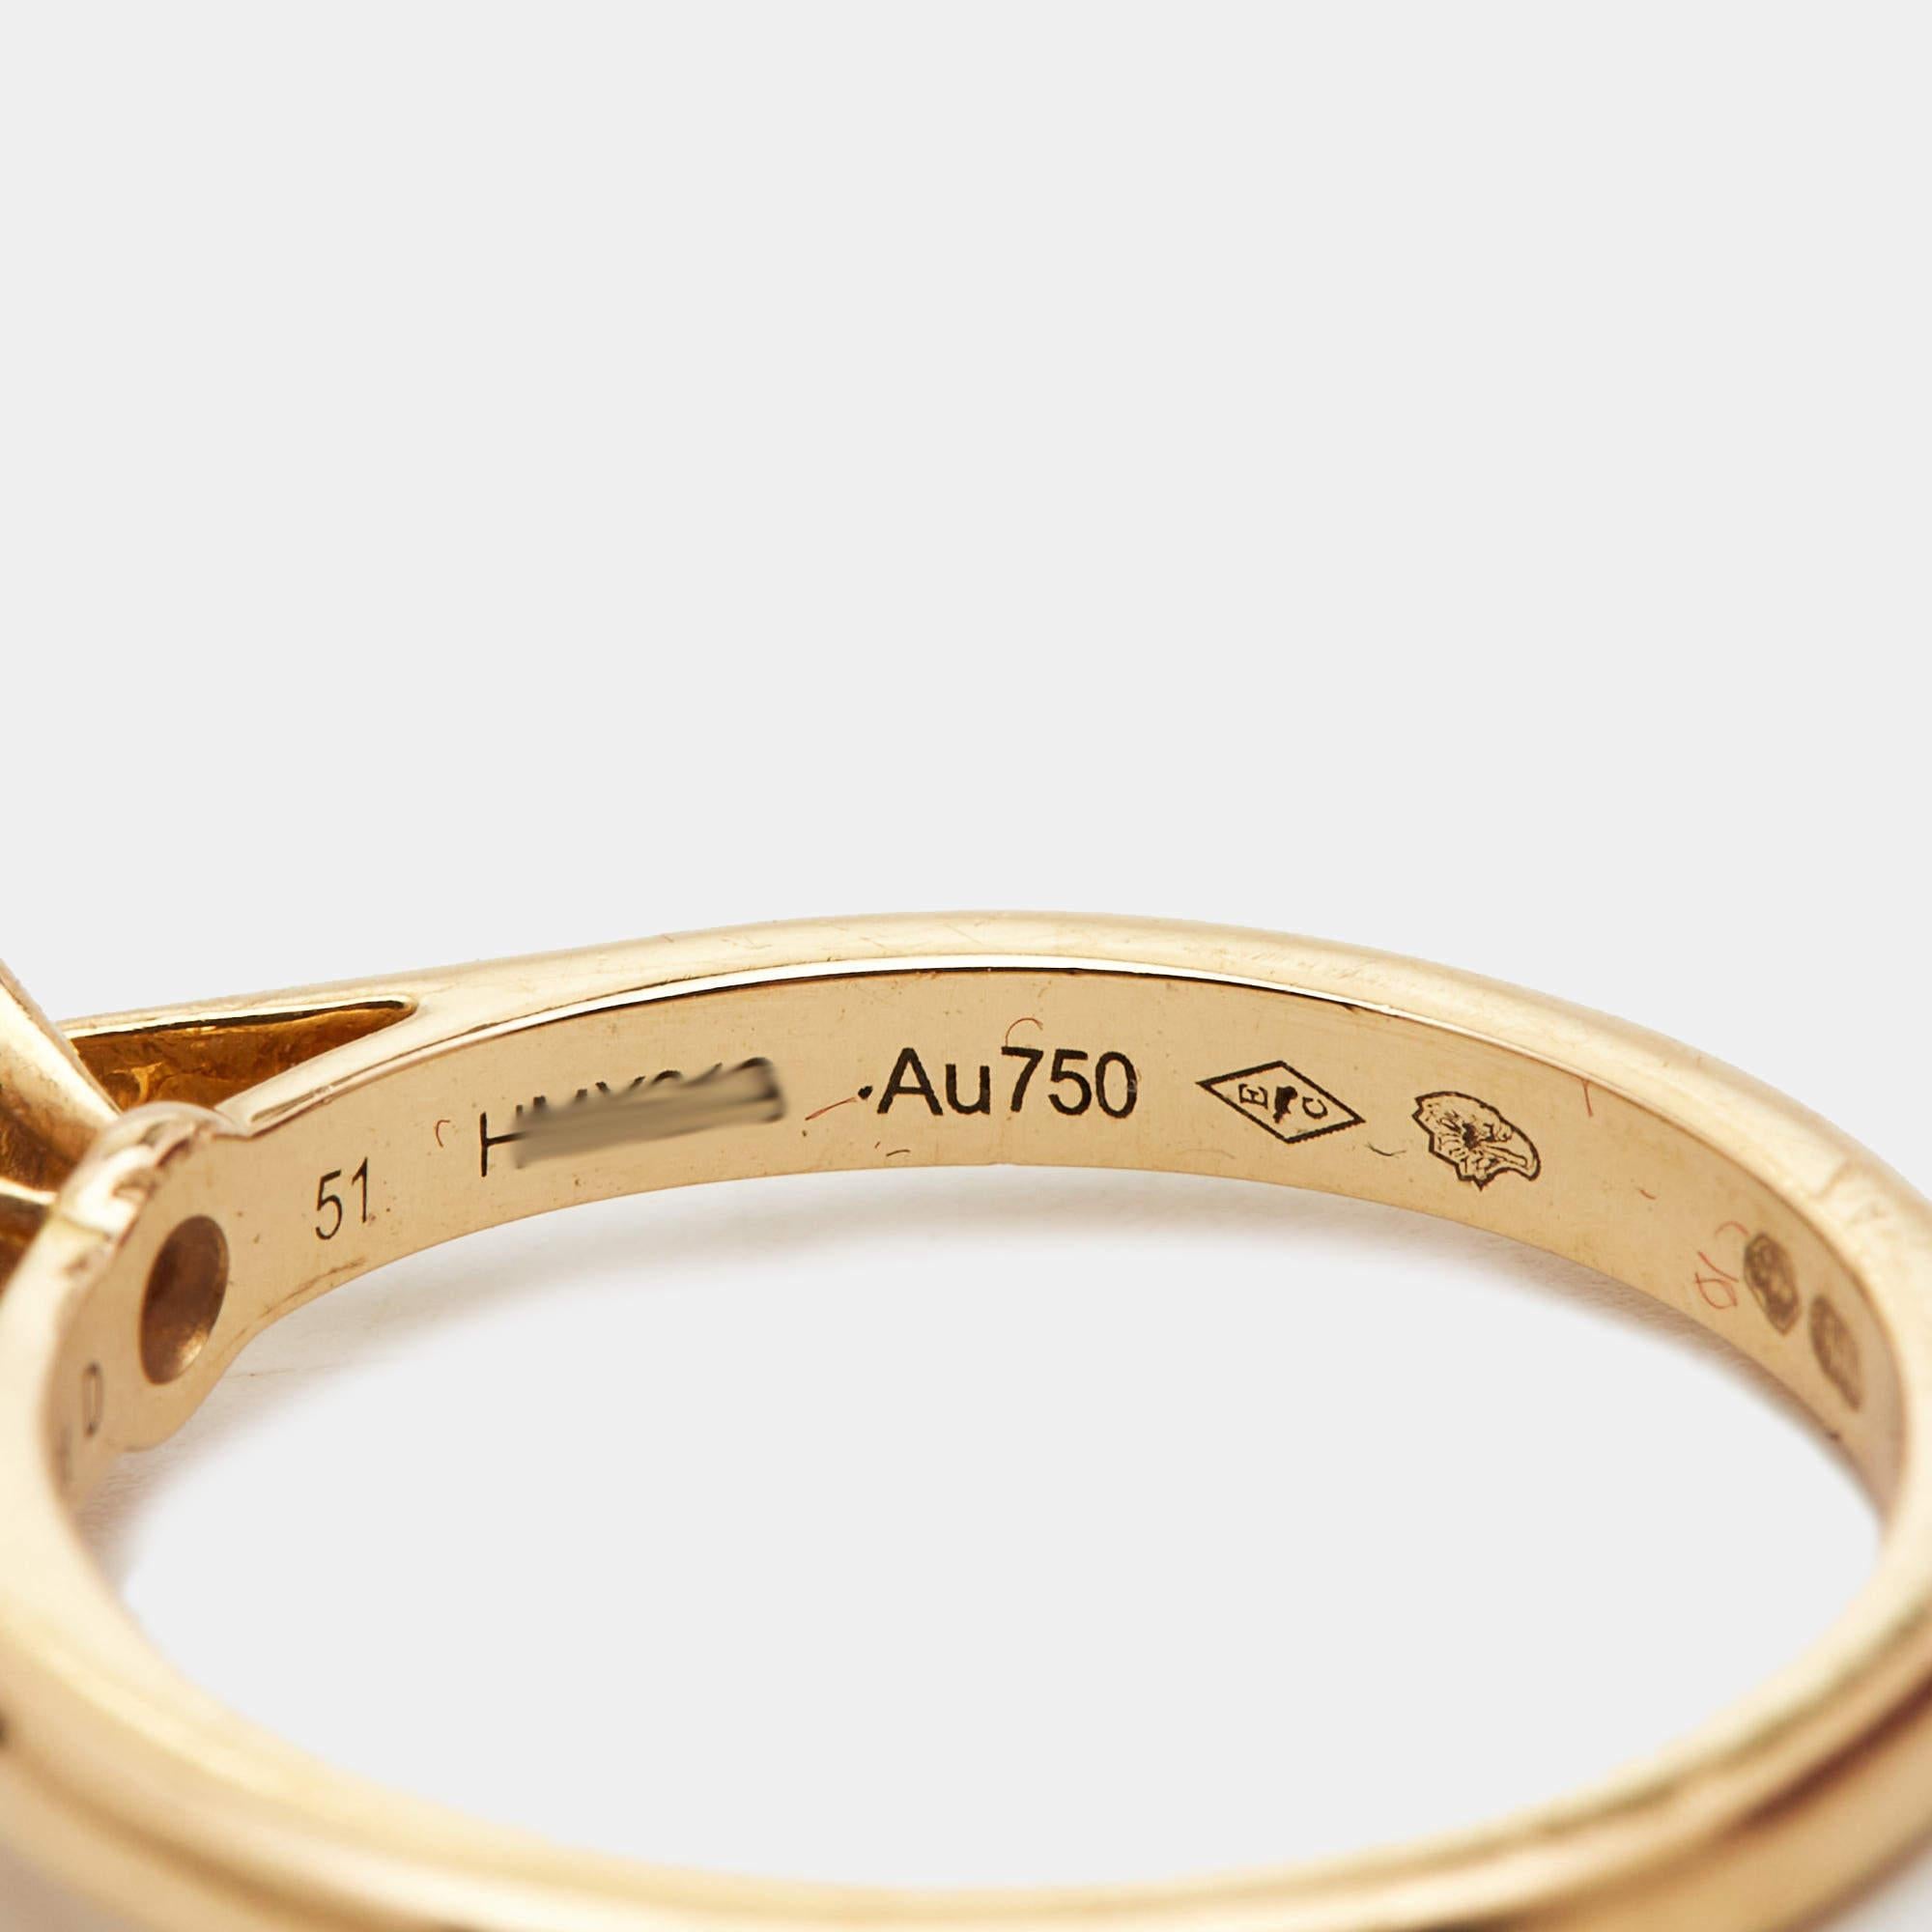 Cartier 1895 Diamond 18k Yellow Gold Solitare Ring Size 51 In Fair Condition For Sale In Dubai, Al Qouz 2